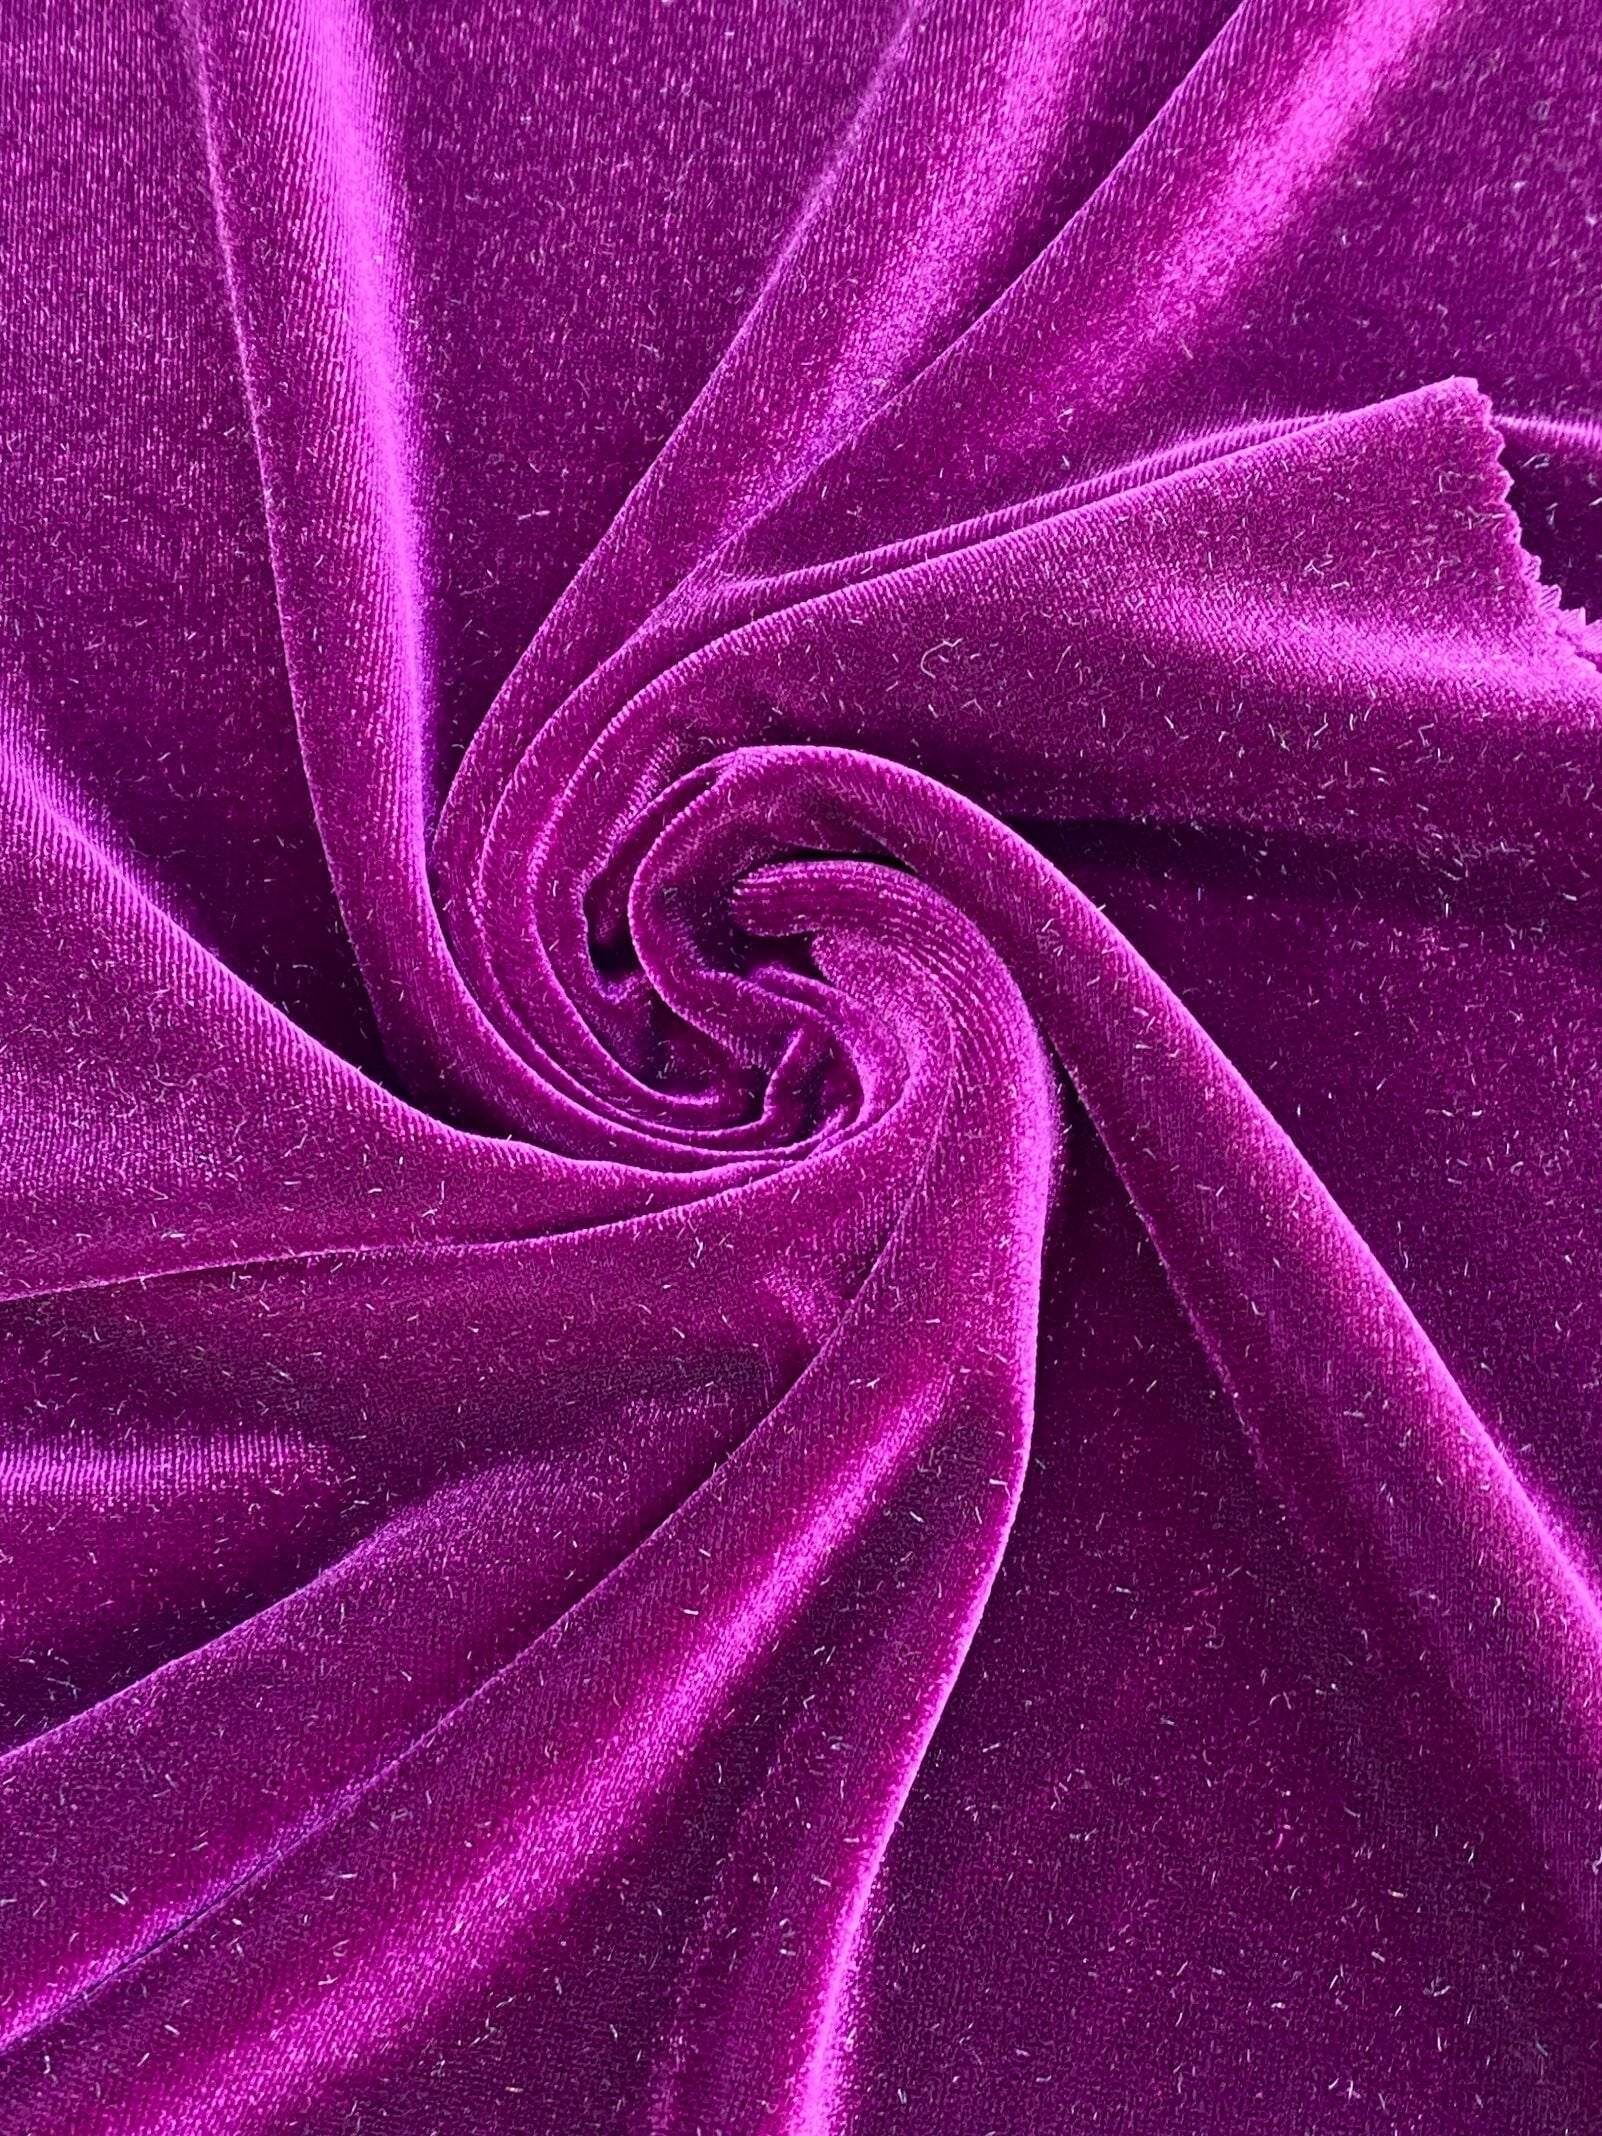 Magenta velvet, magenta stretch velvet, magenta spandex velvet, purple velvet, solid velvet fabric, cheap velvet fabric, discount velvet, velvet on sale, raspberry velvet,, velvet material